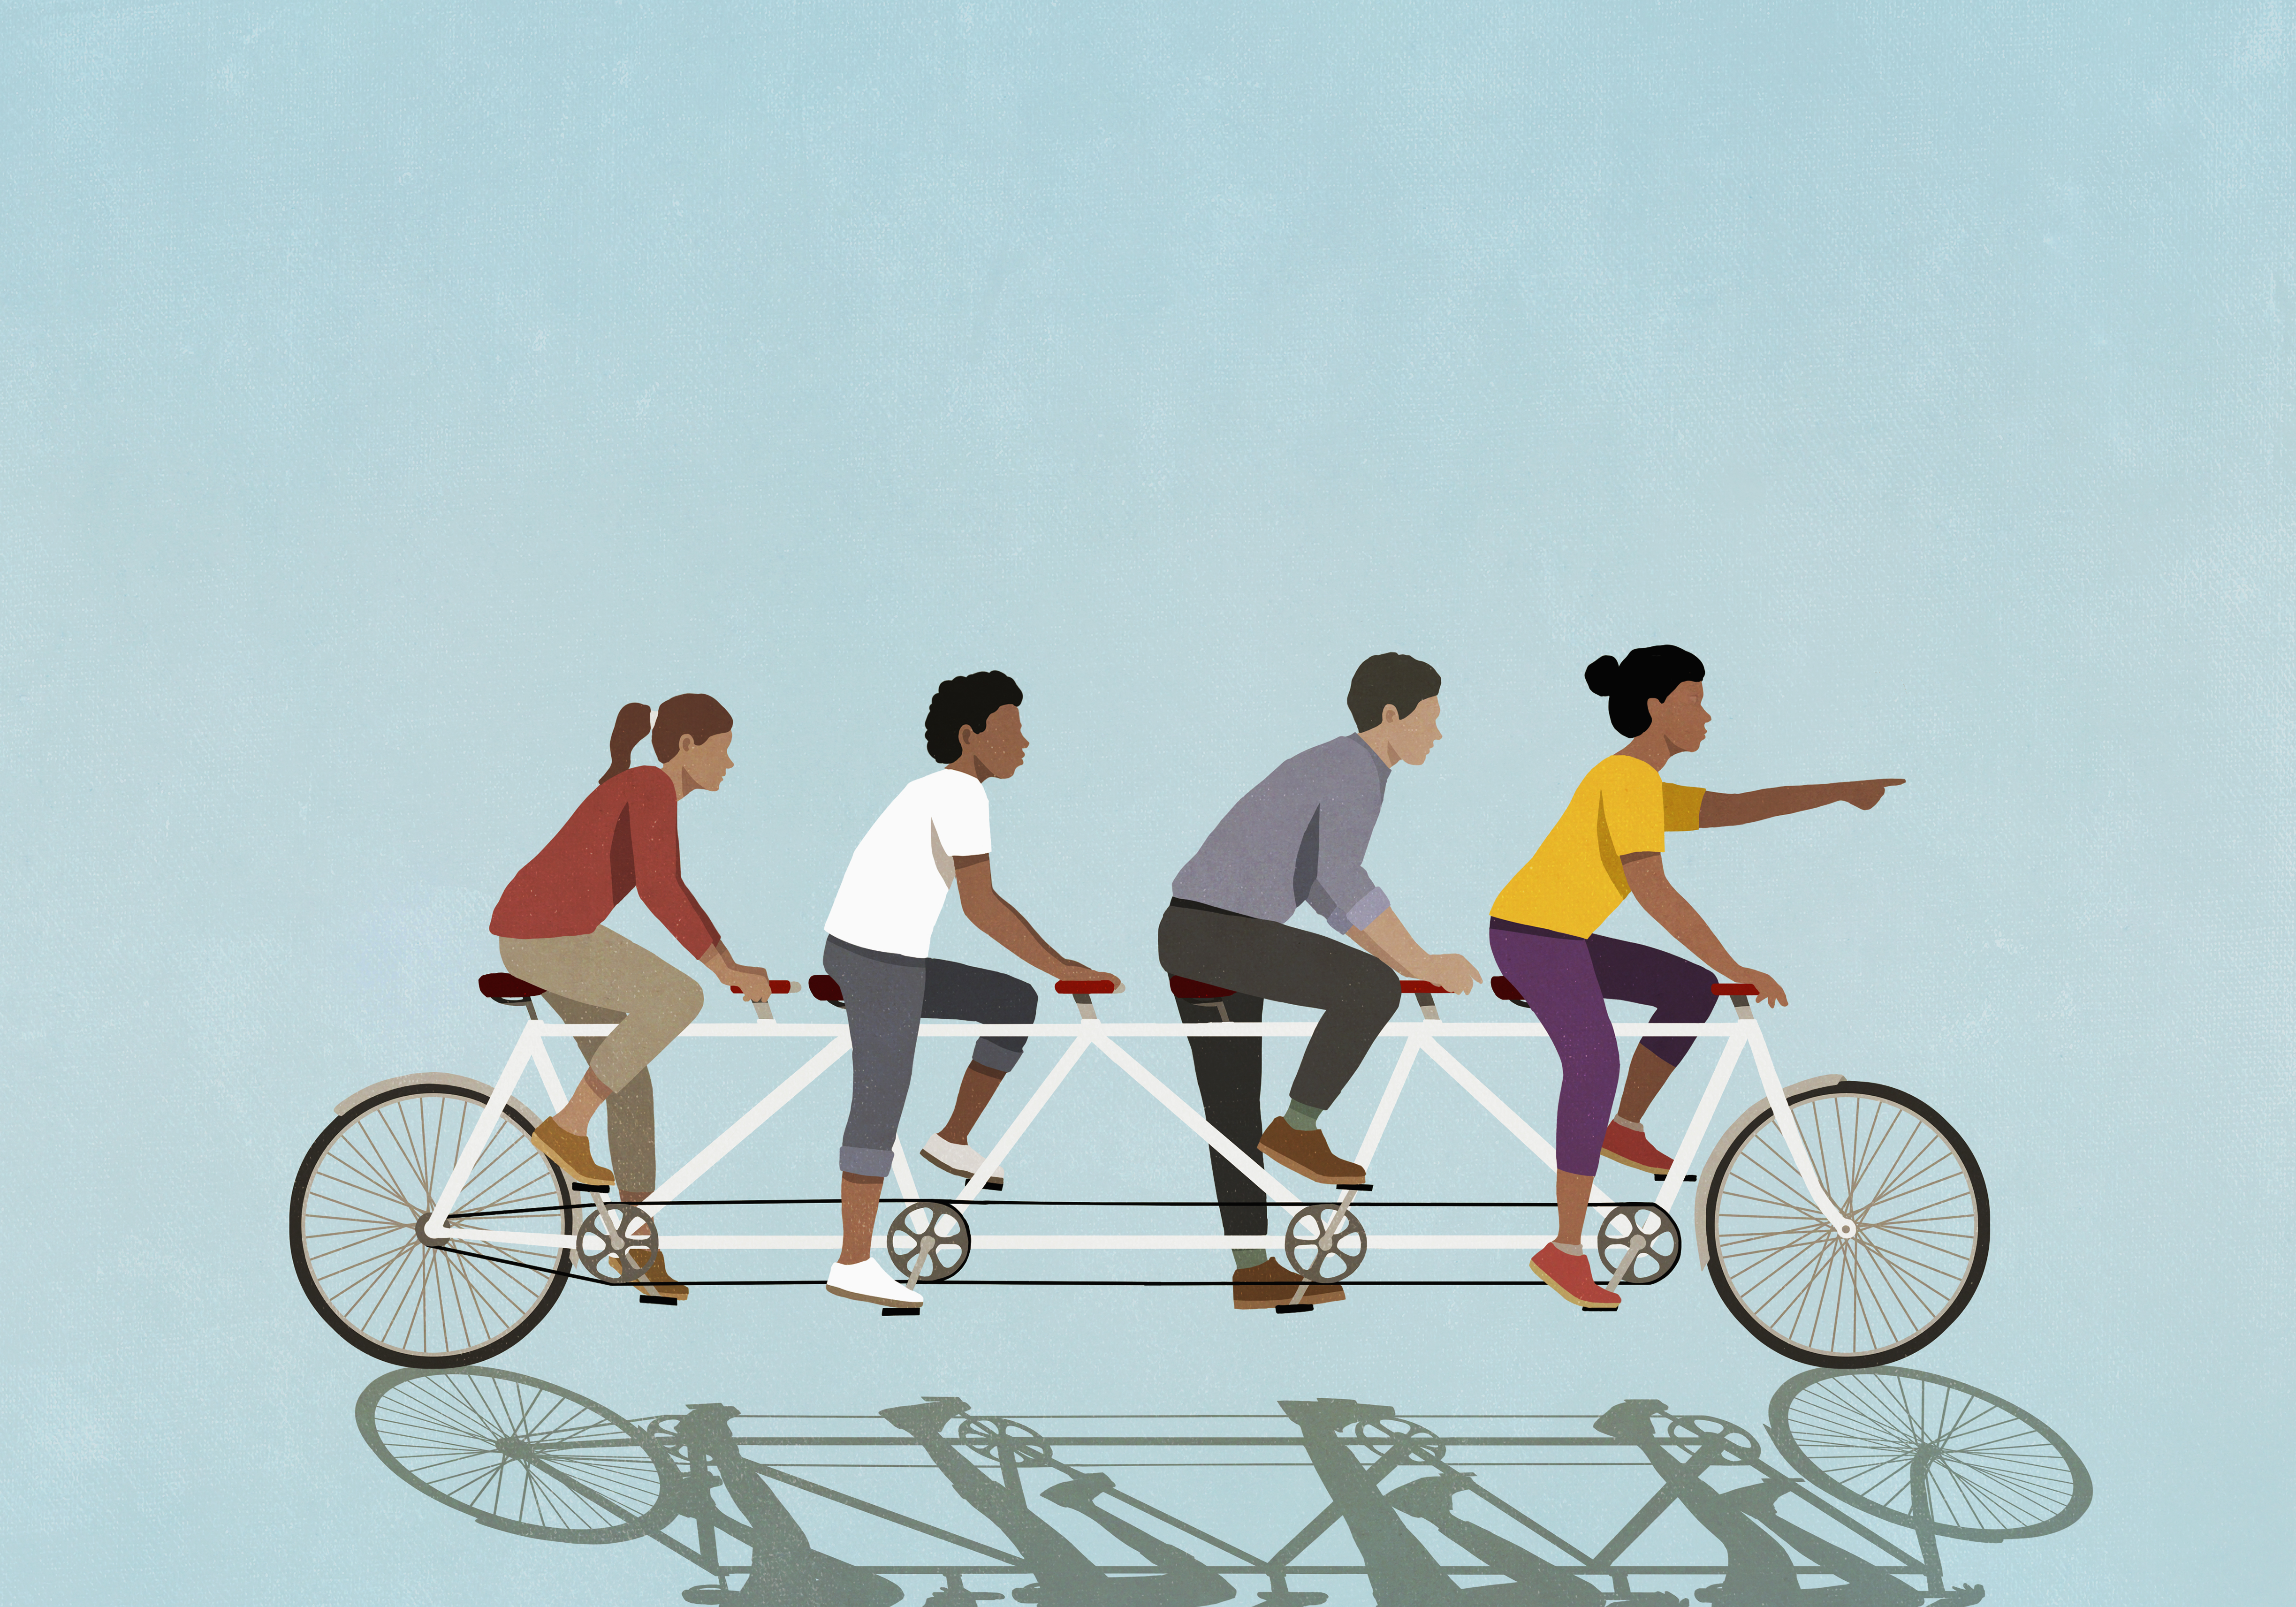 Ilustración de amigos montando una bicicleta tándem sobre un fondo azul.